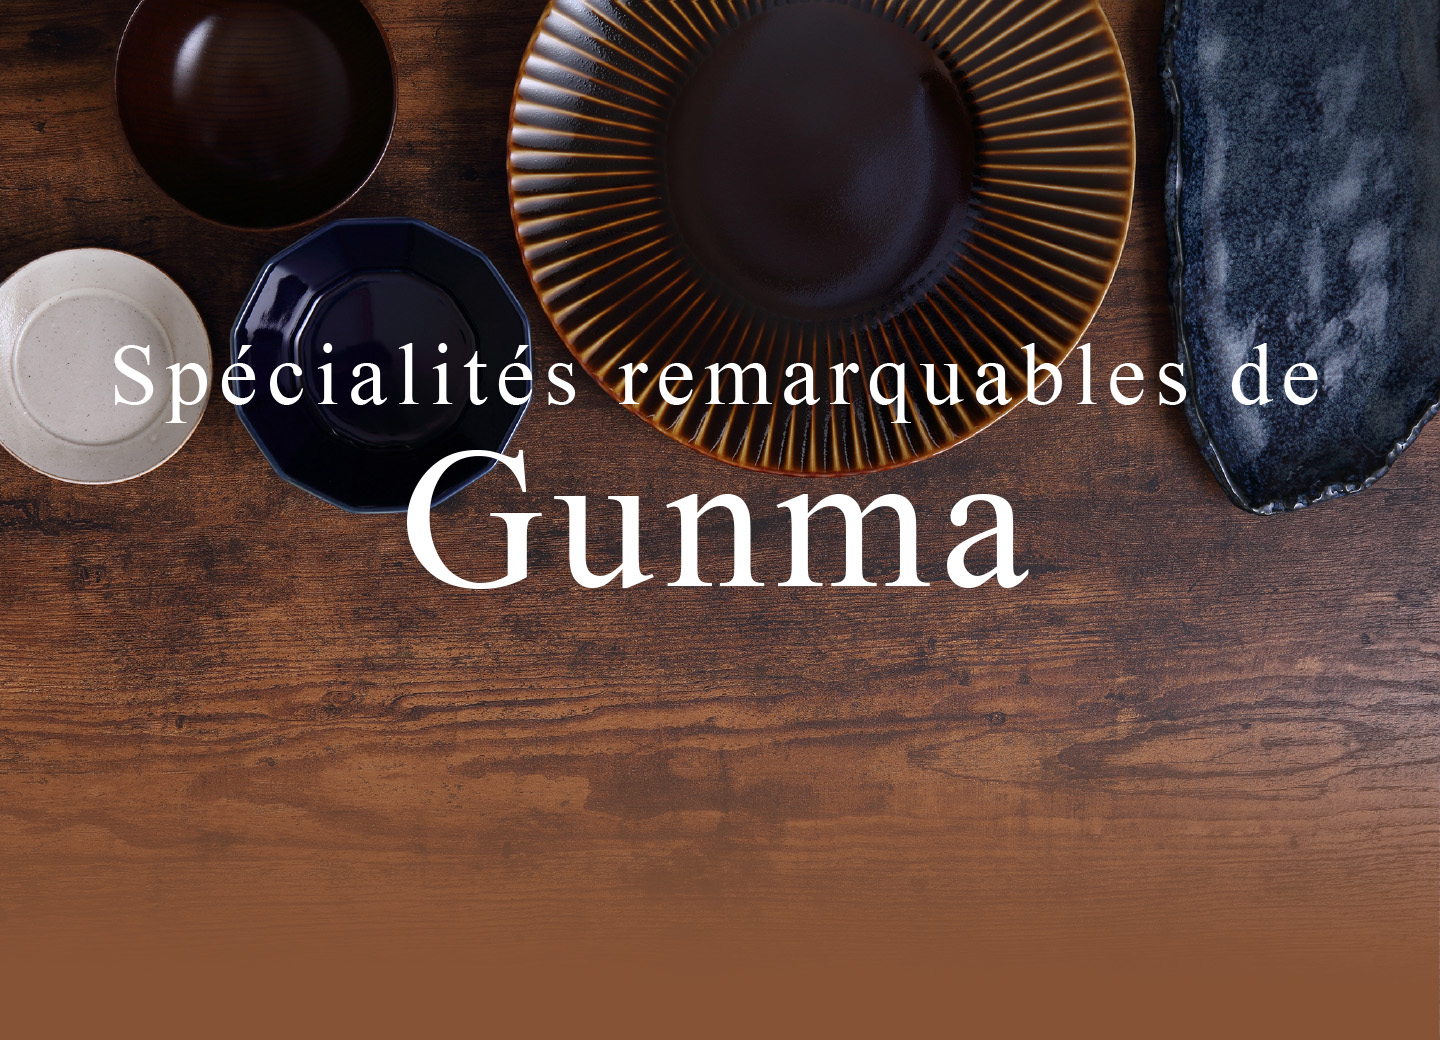 Liste des spécialités remarquables de Gunma